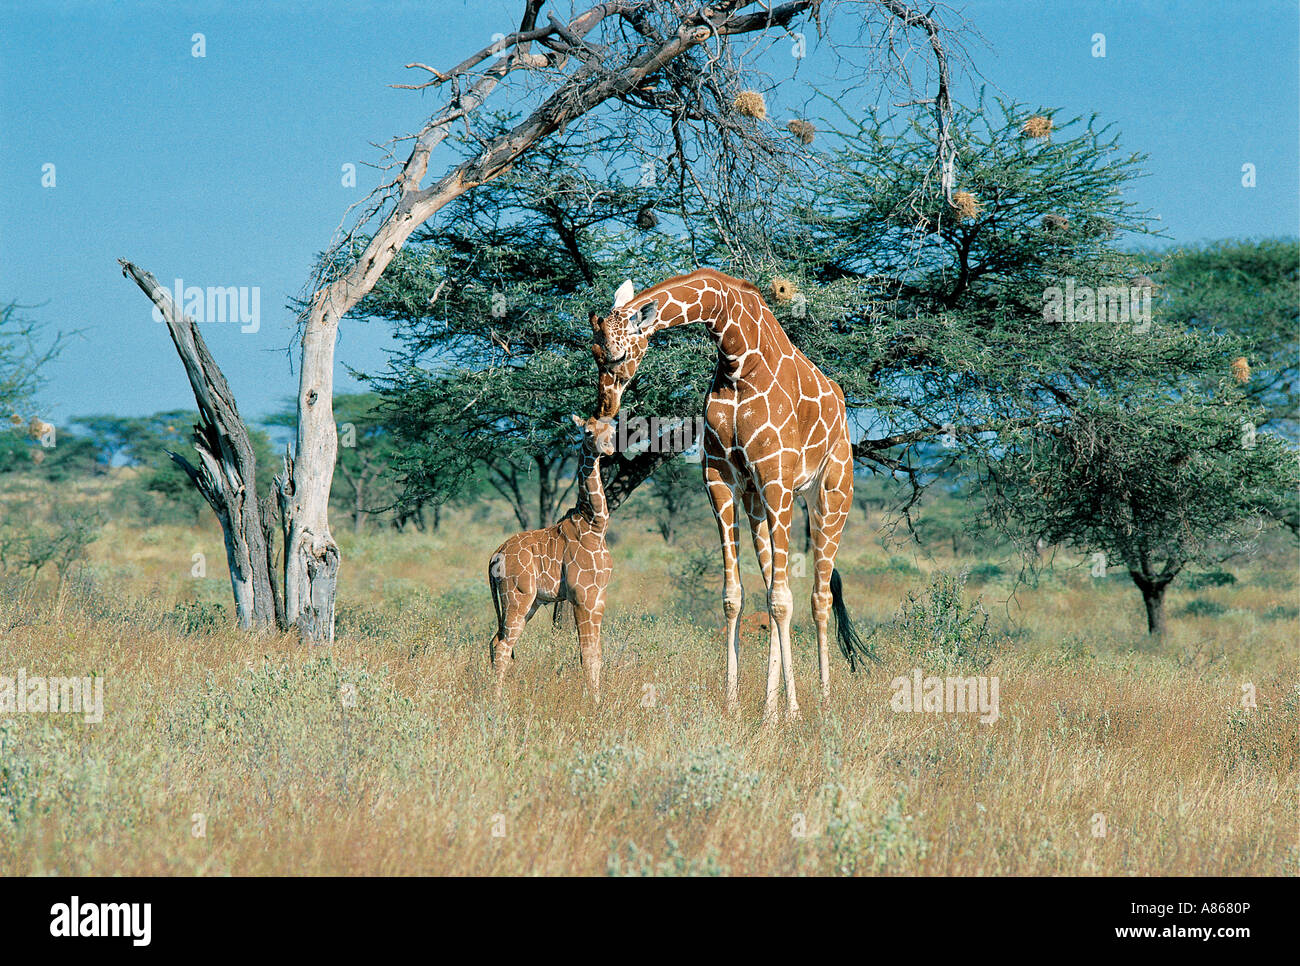 Femme giraffe réticulée de lécher son bébé de la réserve nationale de Samburu, Kenya Banque D'Images